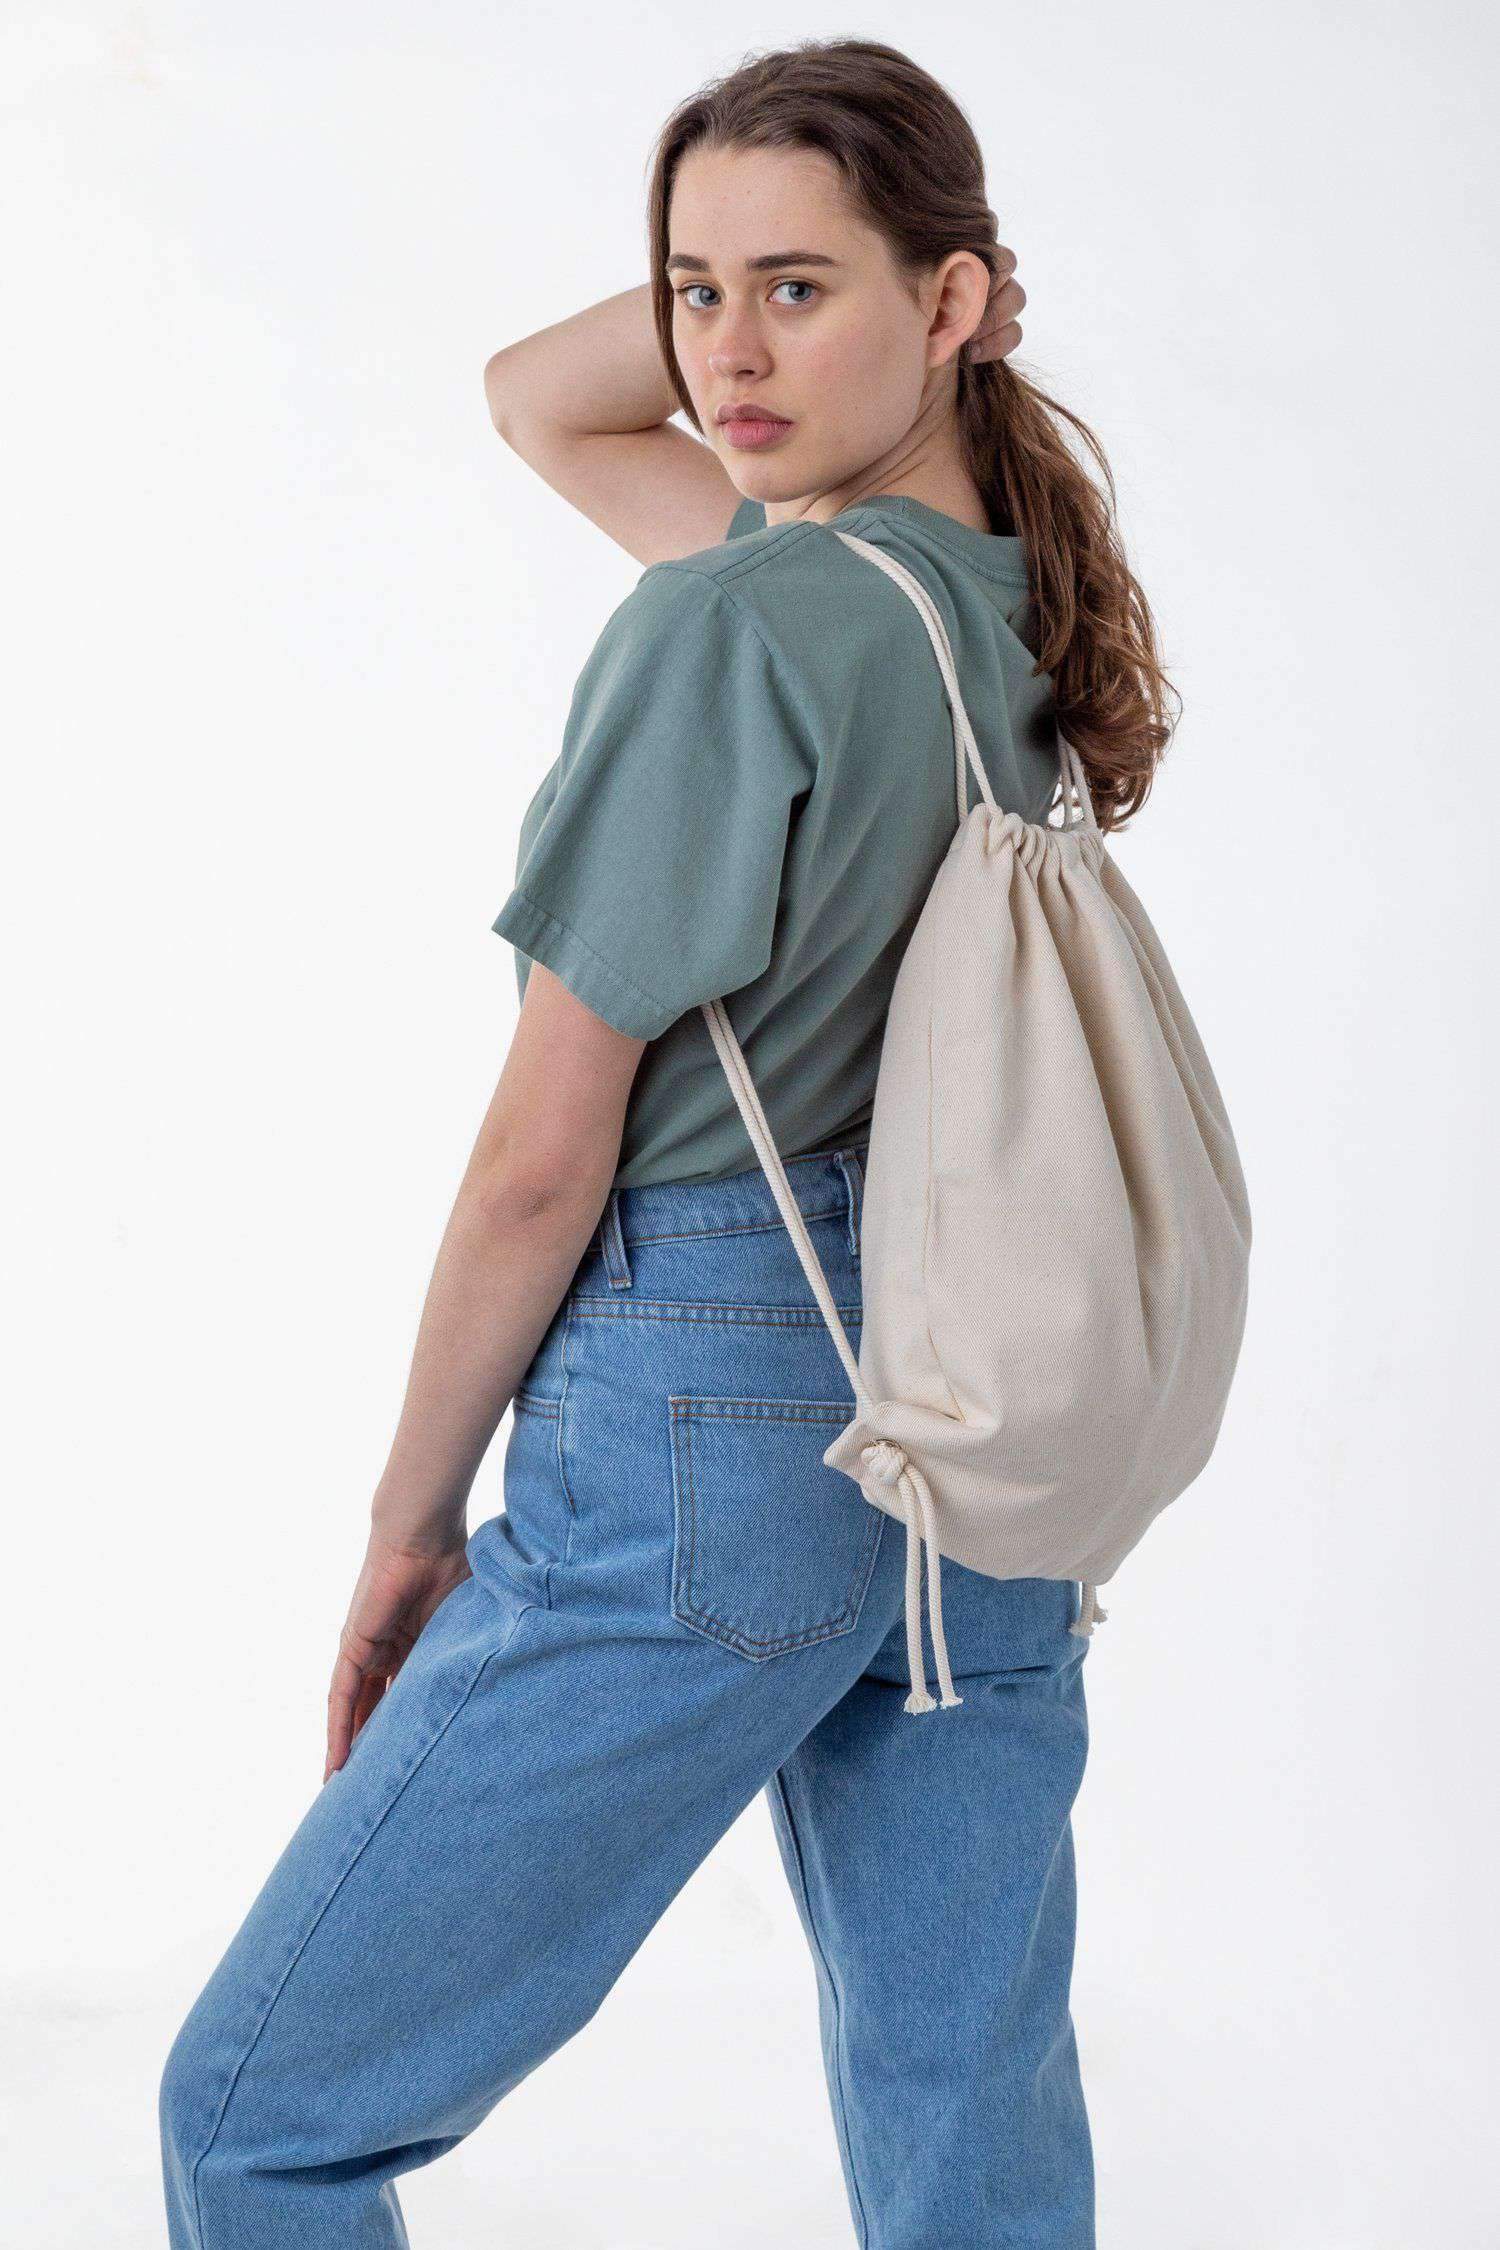 BD09 - Bull Denim Drawstring Backpack Bags Los Angeles Apparel Natural 